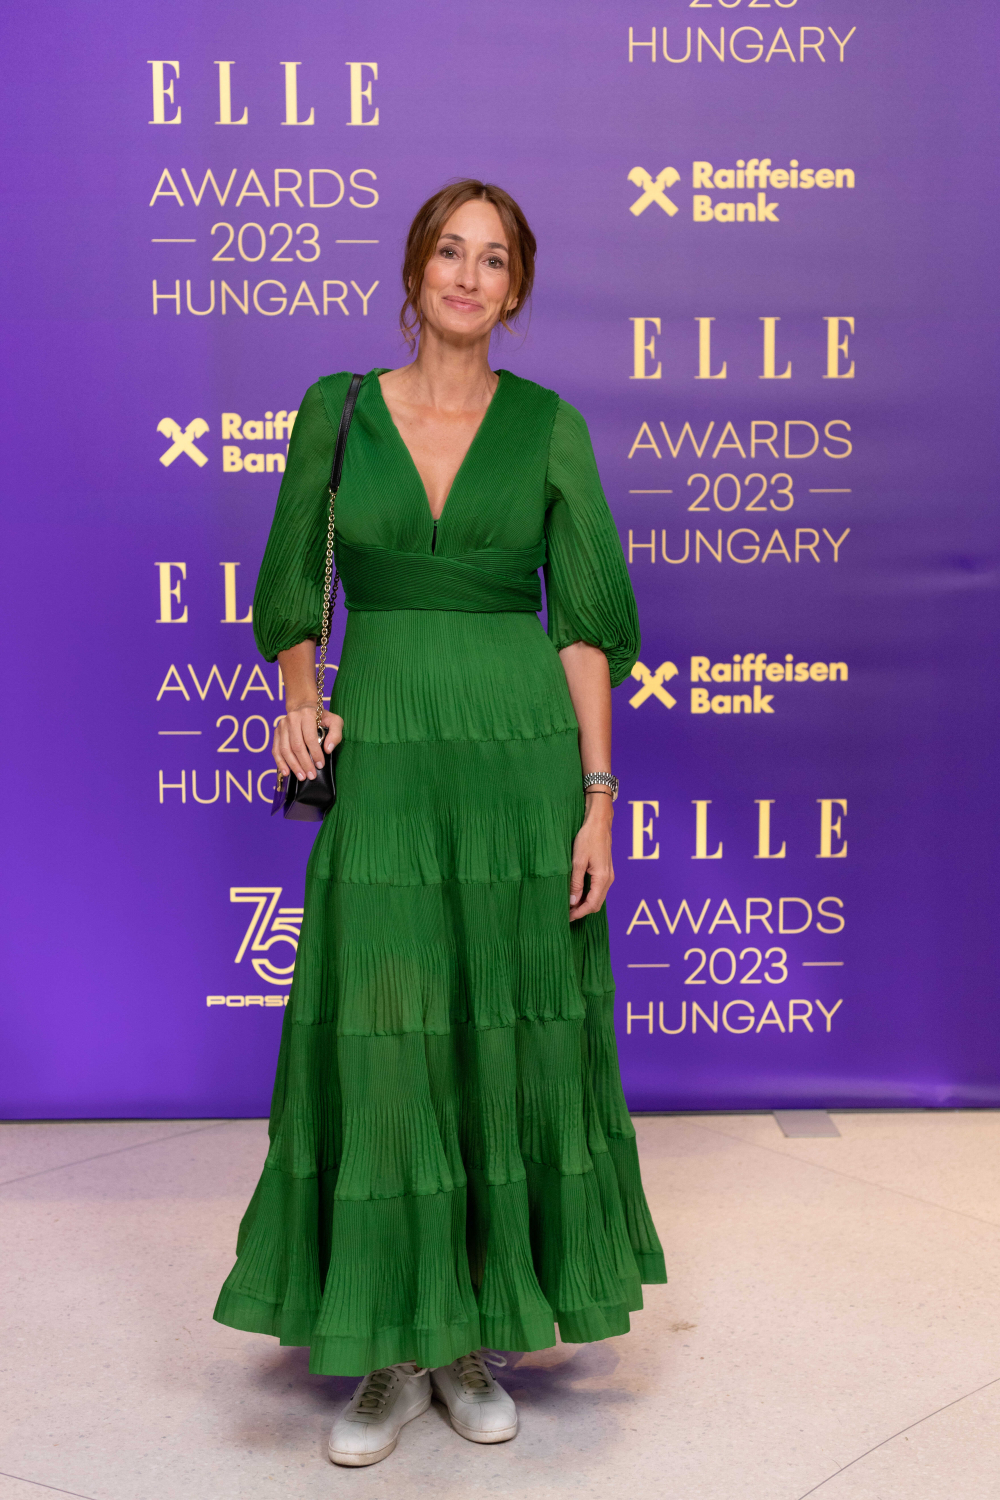 Különleges ruhákban jelentek meg a hírességek az első ELLE Awardson 